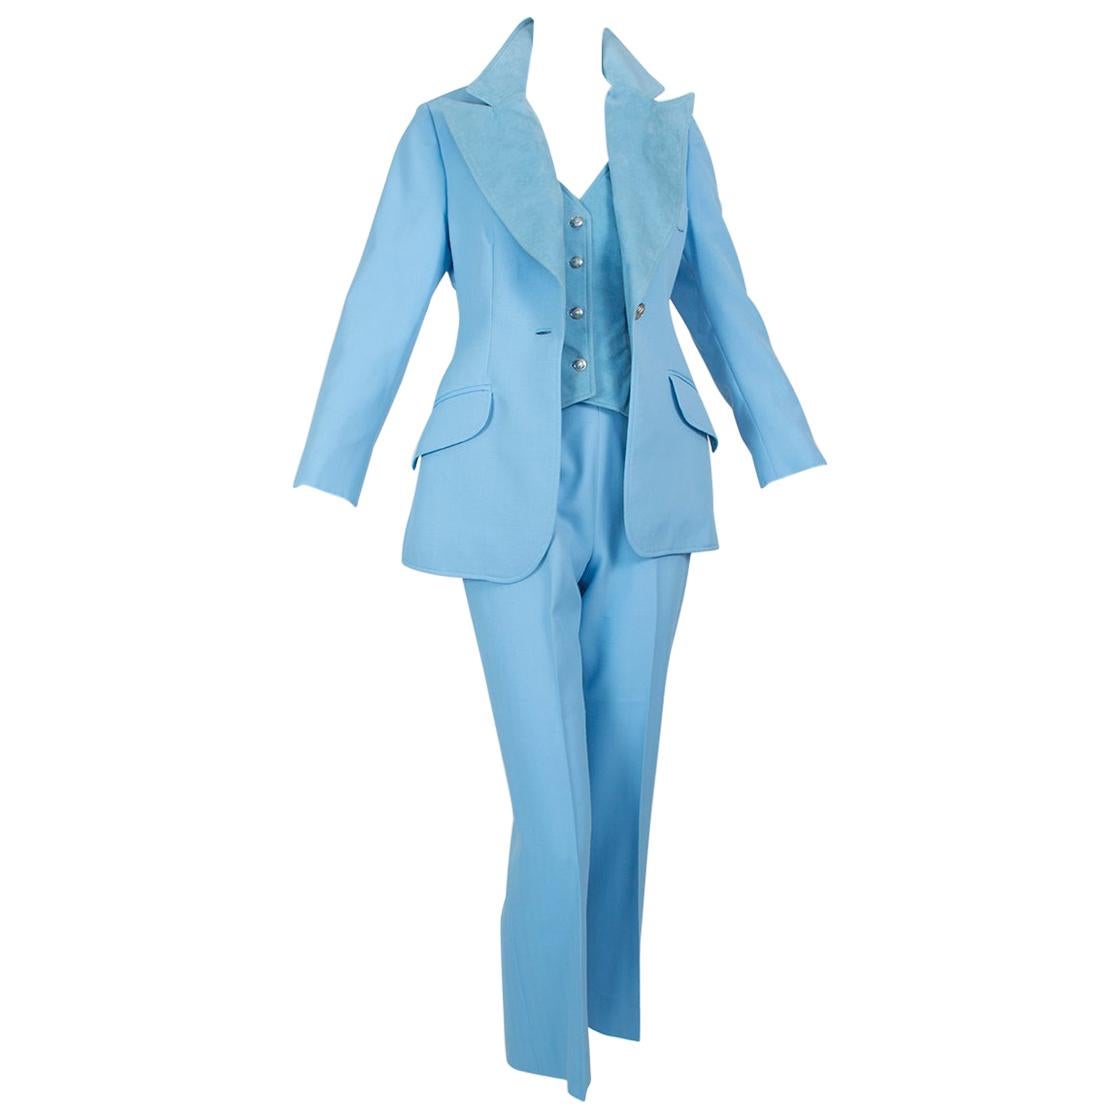 Lilli Ann Paris Powder Blue 3-Piece Western Pant Suit – XS, 1970s